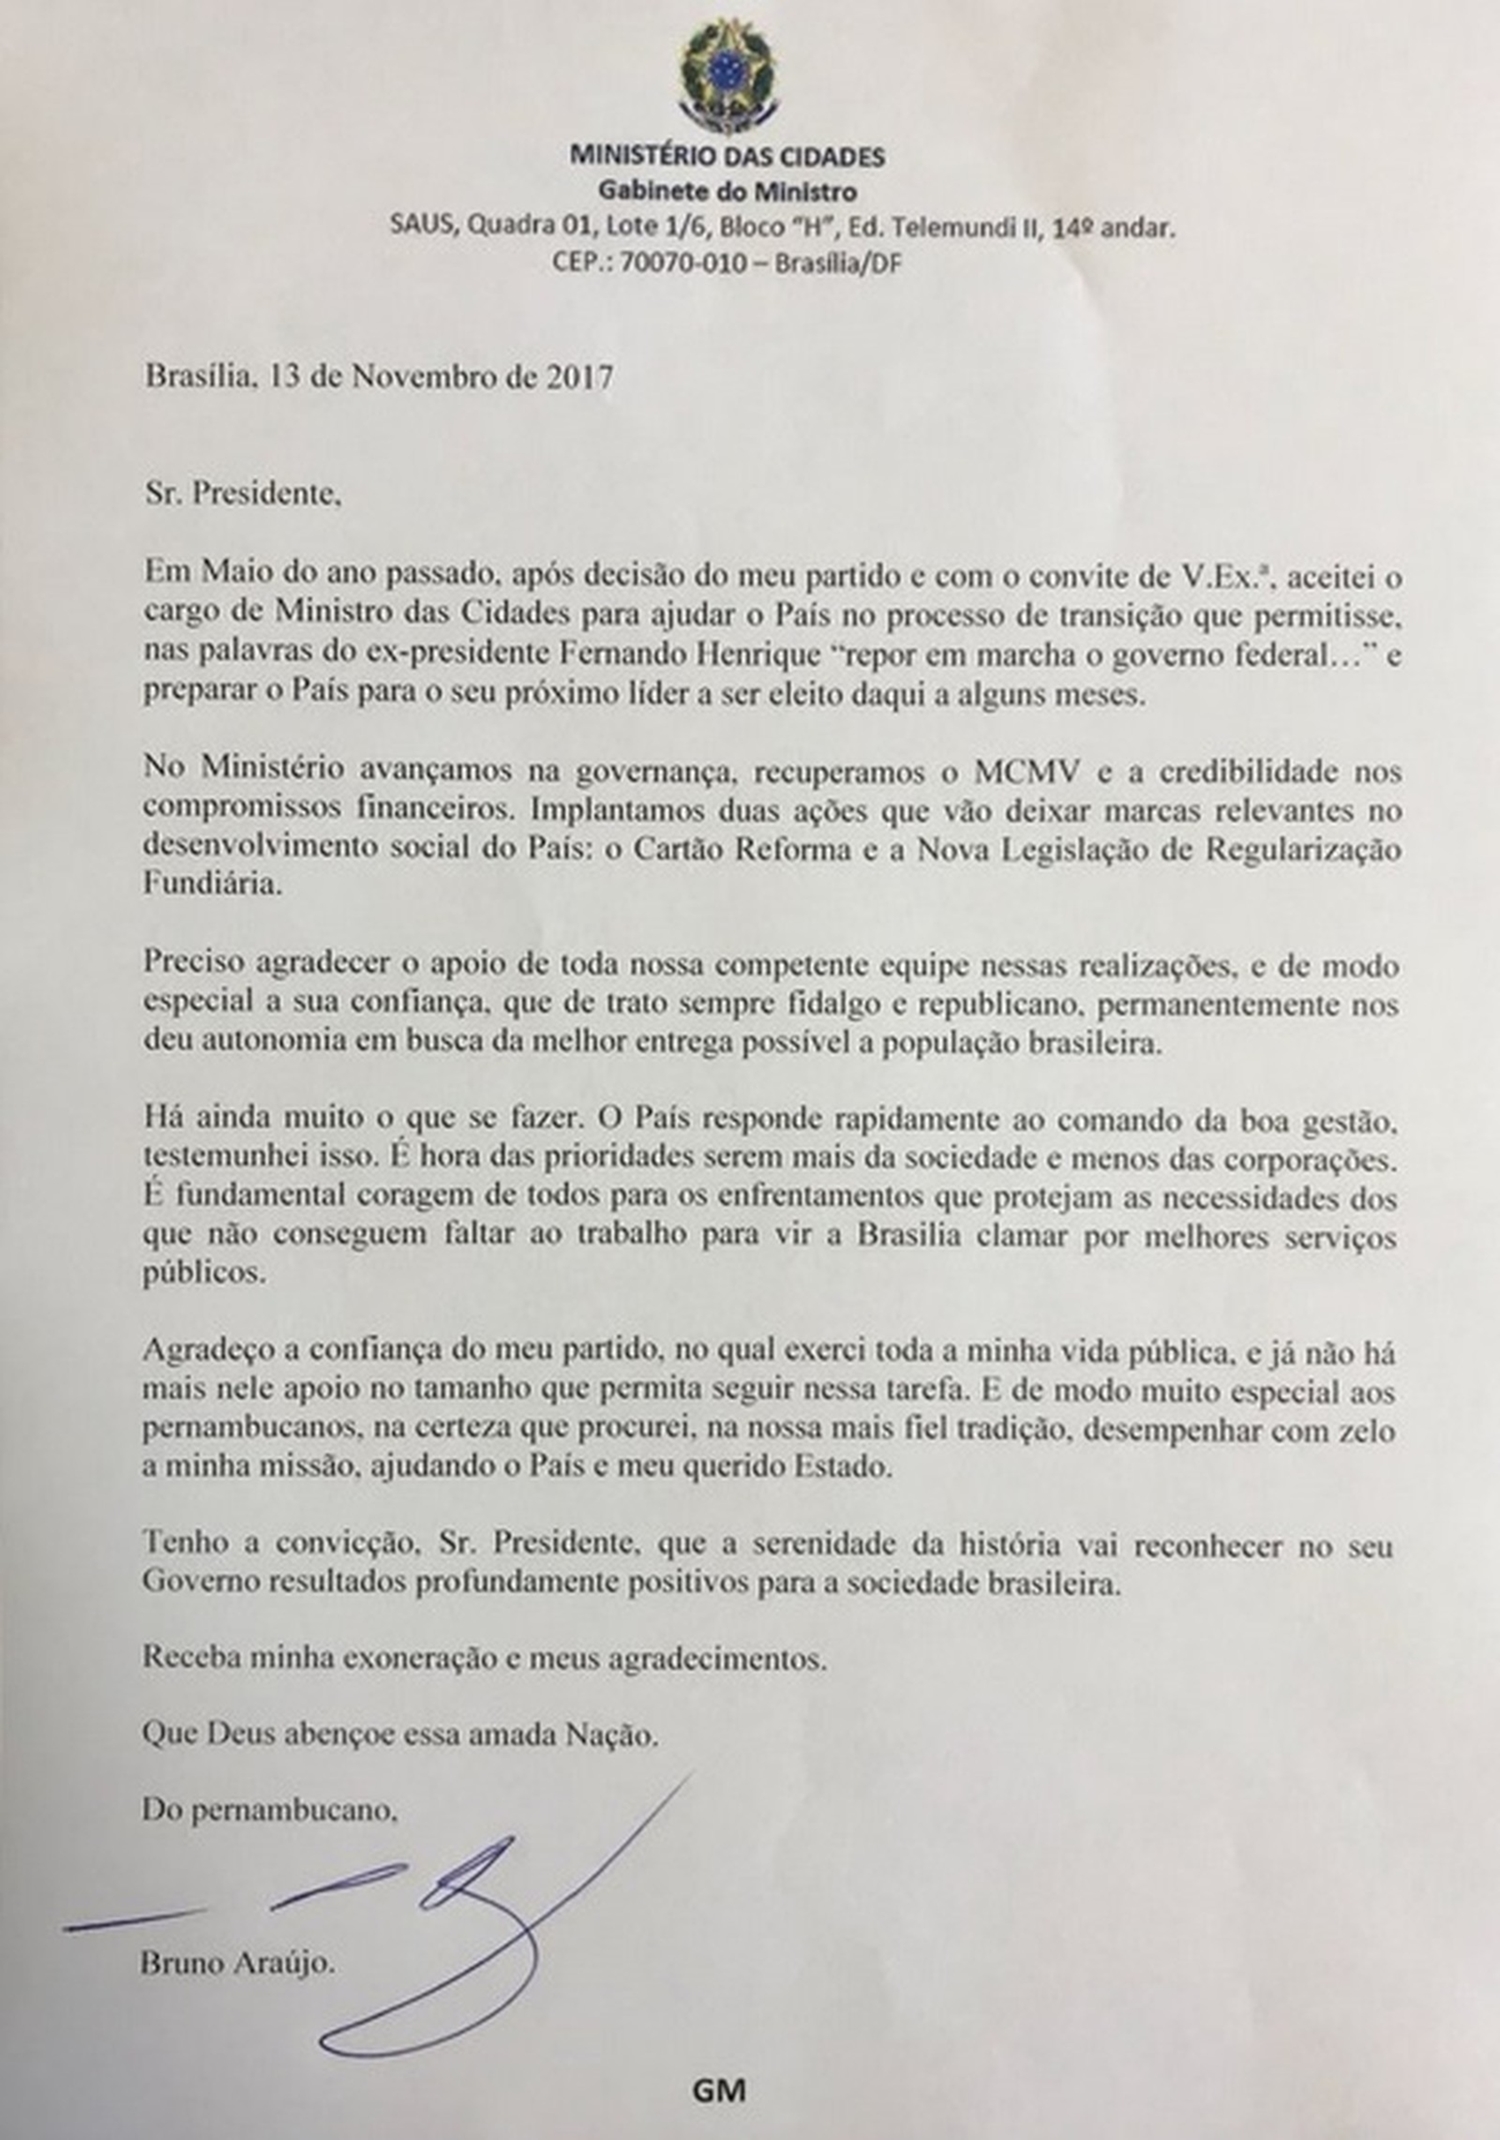 Carta de demissão de Bruno Araújo